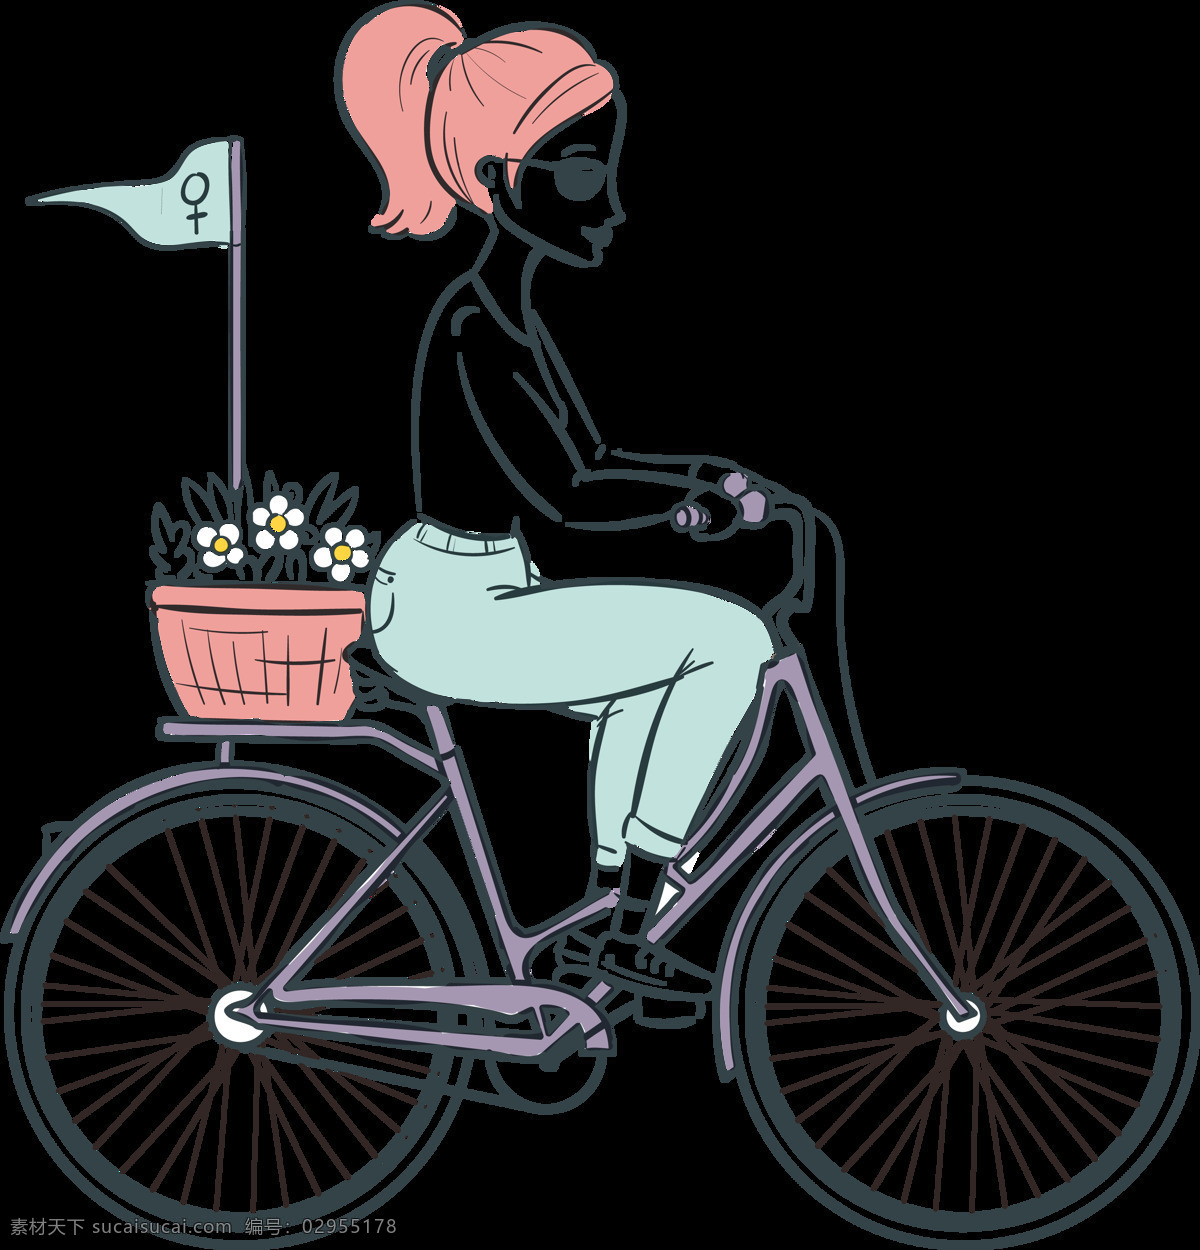 时尚 手绘 自行车 插画 免 抠 透明 图 层 共享单车 女式单车 男式单车 电动车 绿色低碳 绿色环保 环保电动车 健身单车 摩拜 ofo单车 小蓝单车 双人单车 多人单车